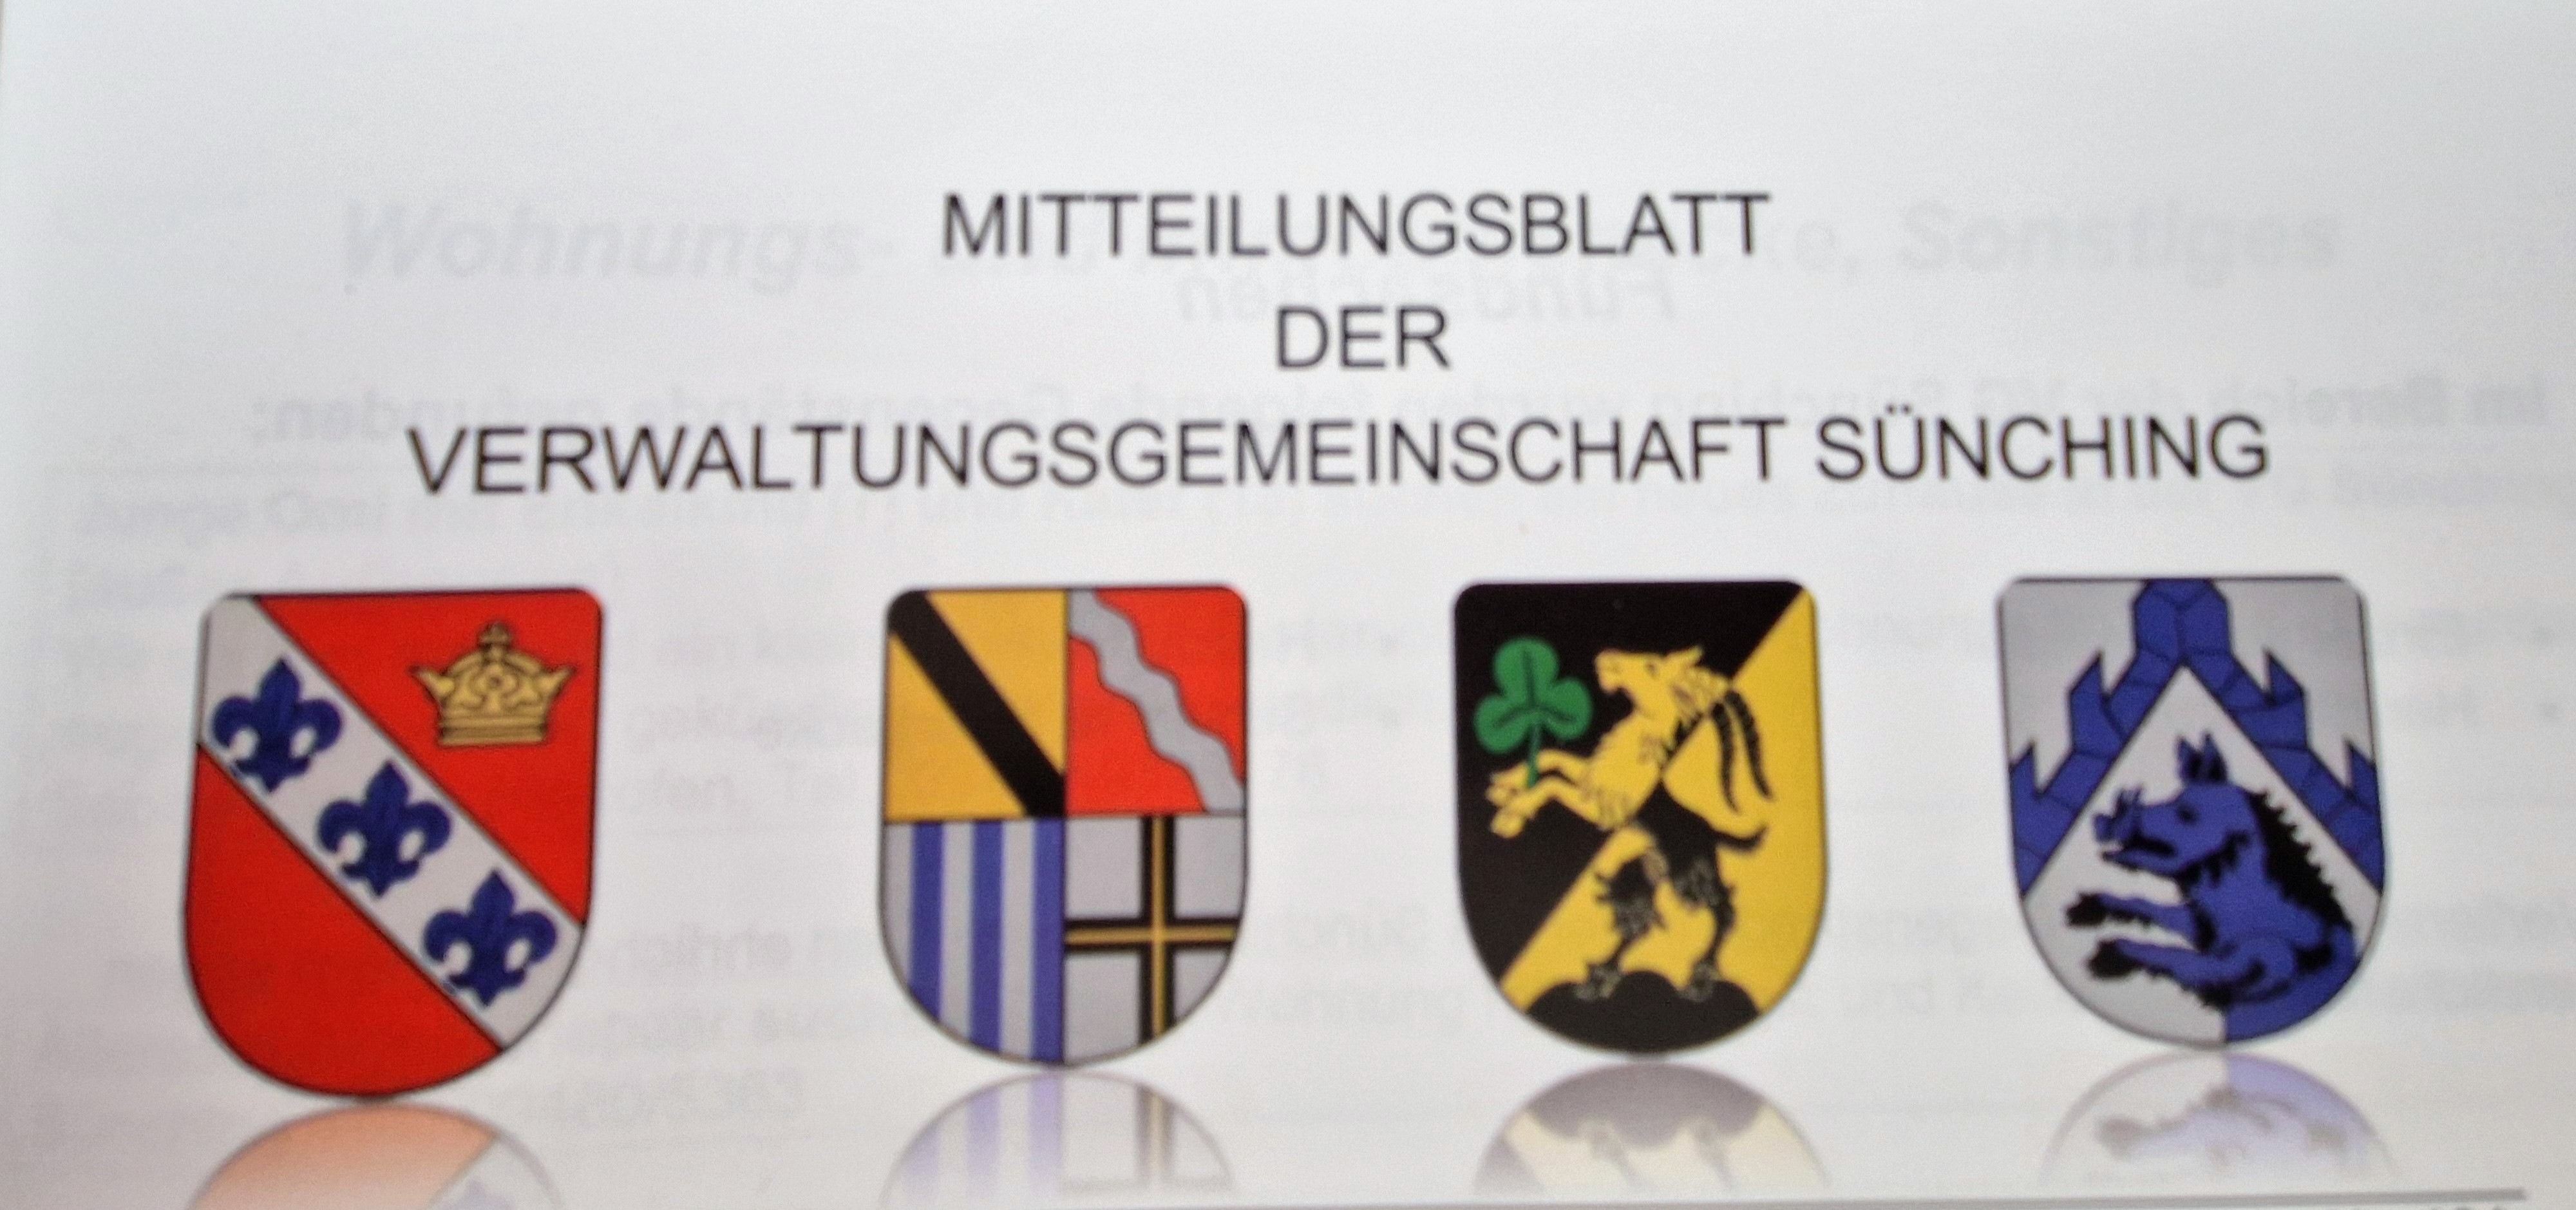 Mitteilungsblatt der Verwaltungsgemeinschaft Sünching